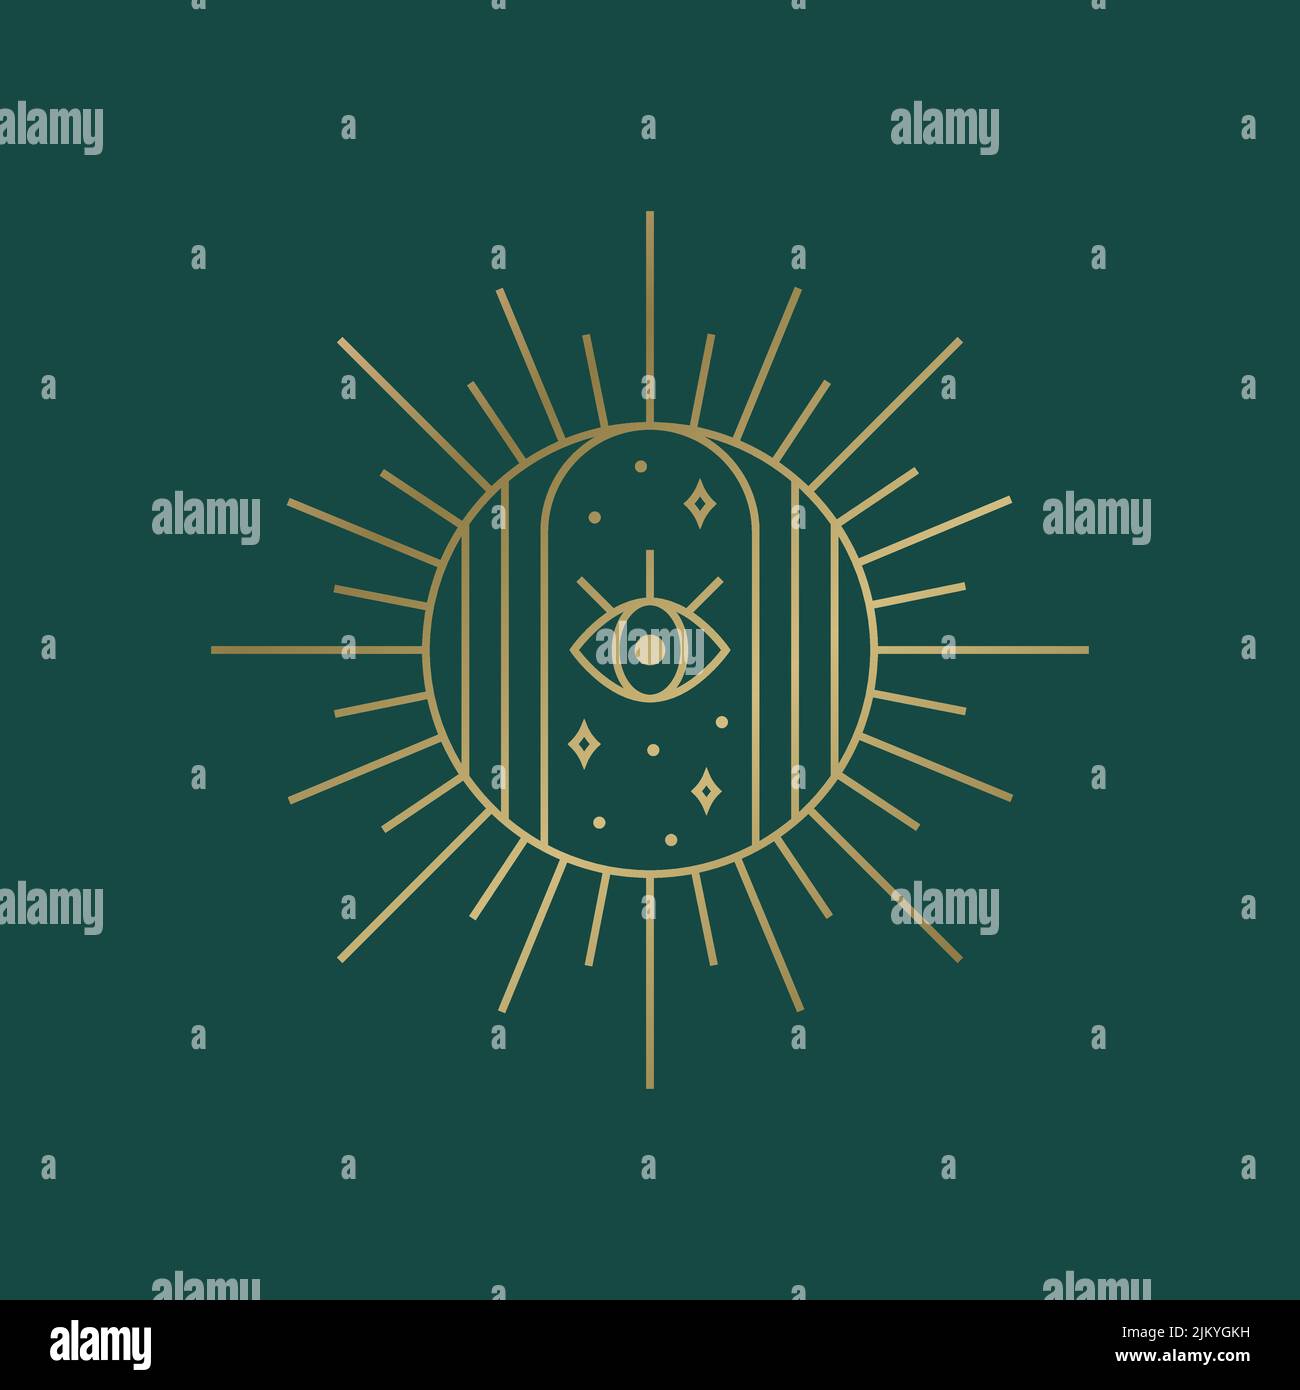 Logo spirituale boho. Emblema del sole con stelle e occhi. Elemento di disegno vettoriale per temi magici, esoterici, celesti, astrologici e altri. Illustrazione Vettoriale